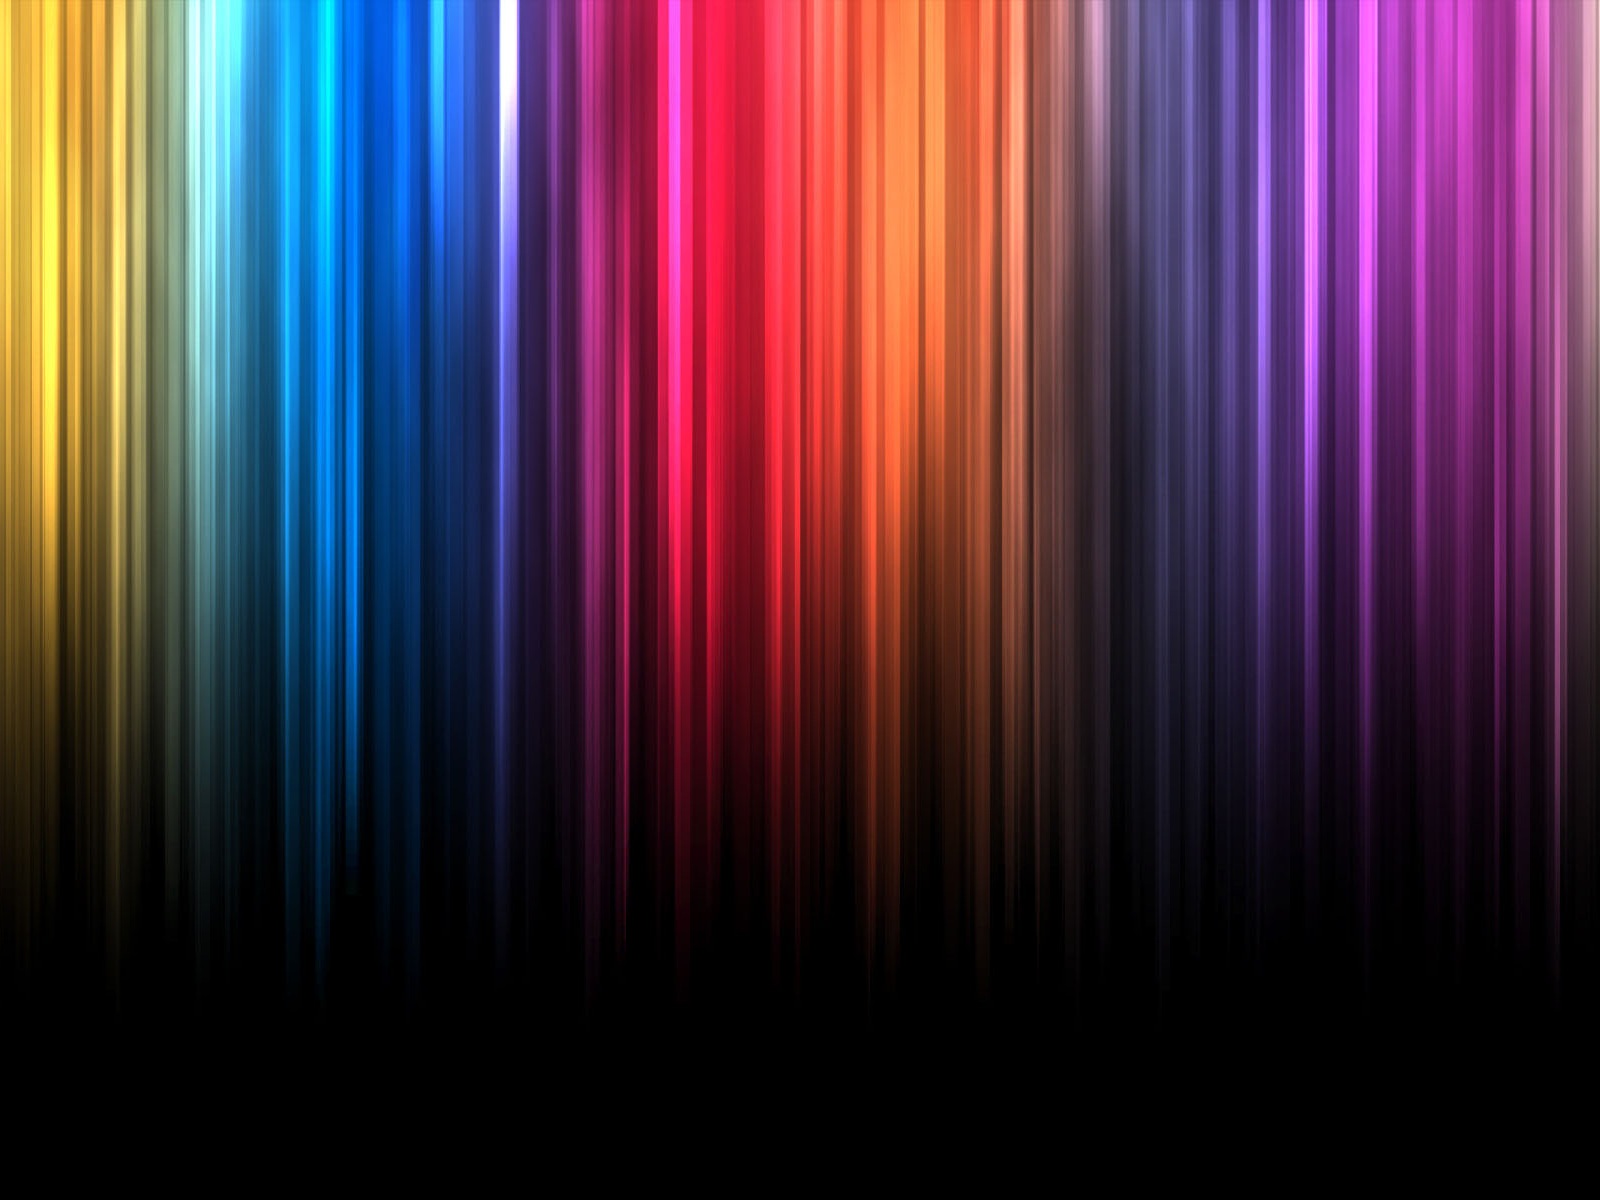 spektrum wallpaper,violett,lila,blau,licht,linie